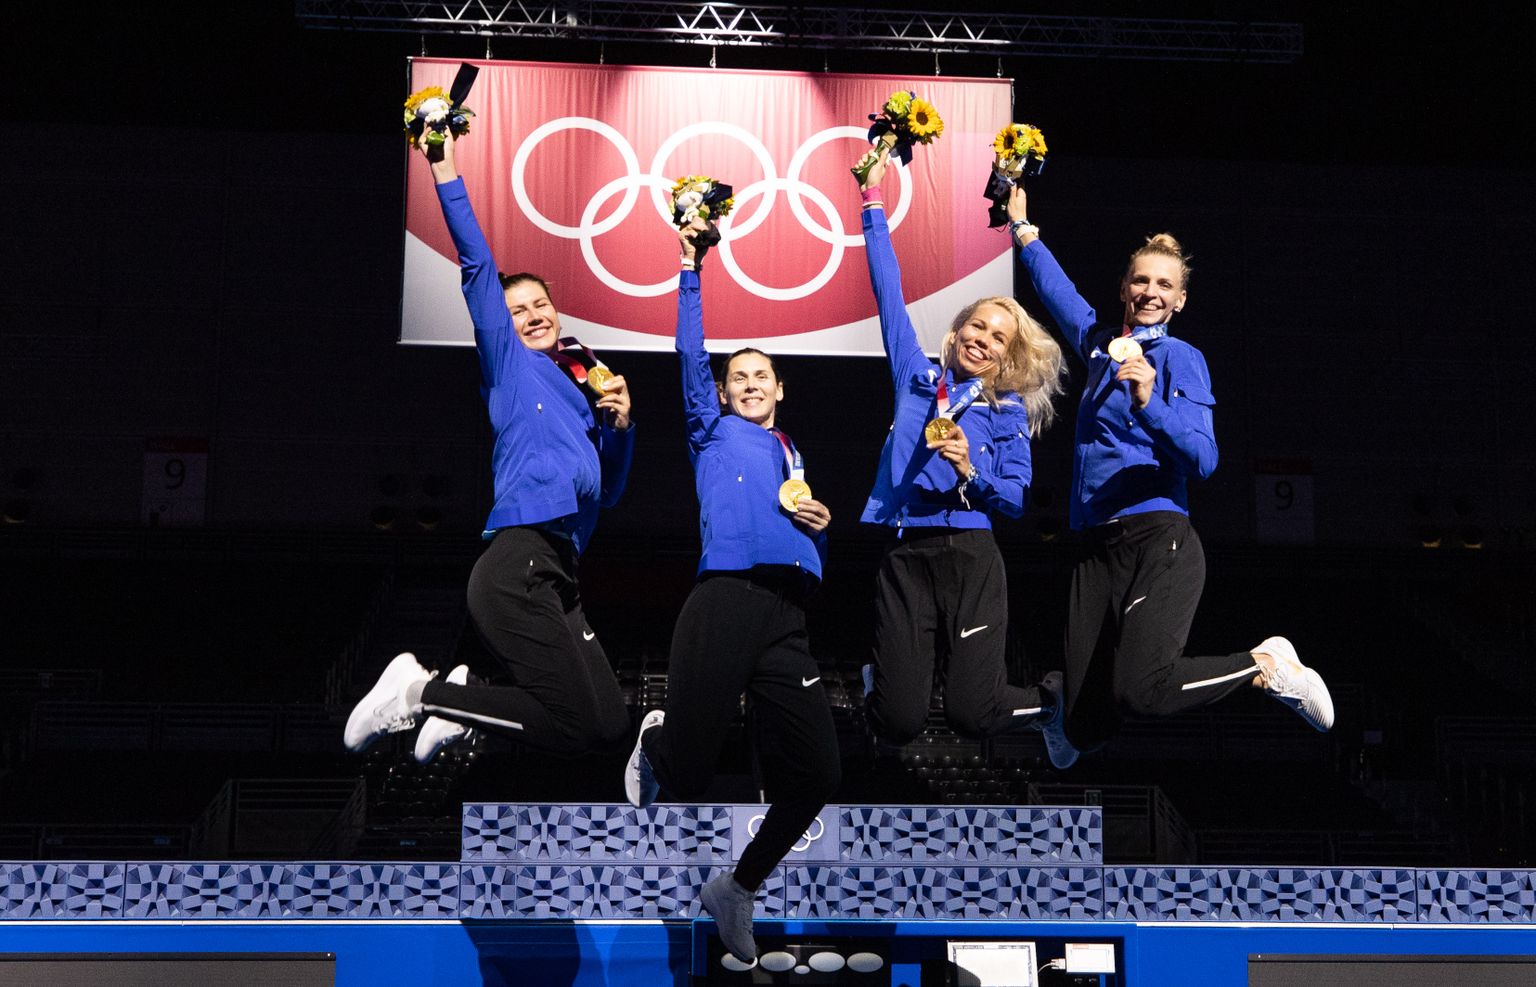 Eesti epeenaiskond võitis Tokyo olümpiamängudel kuldmedali.